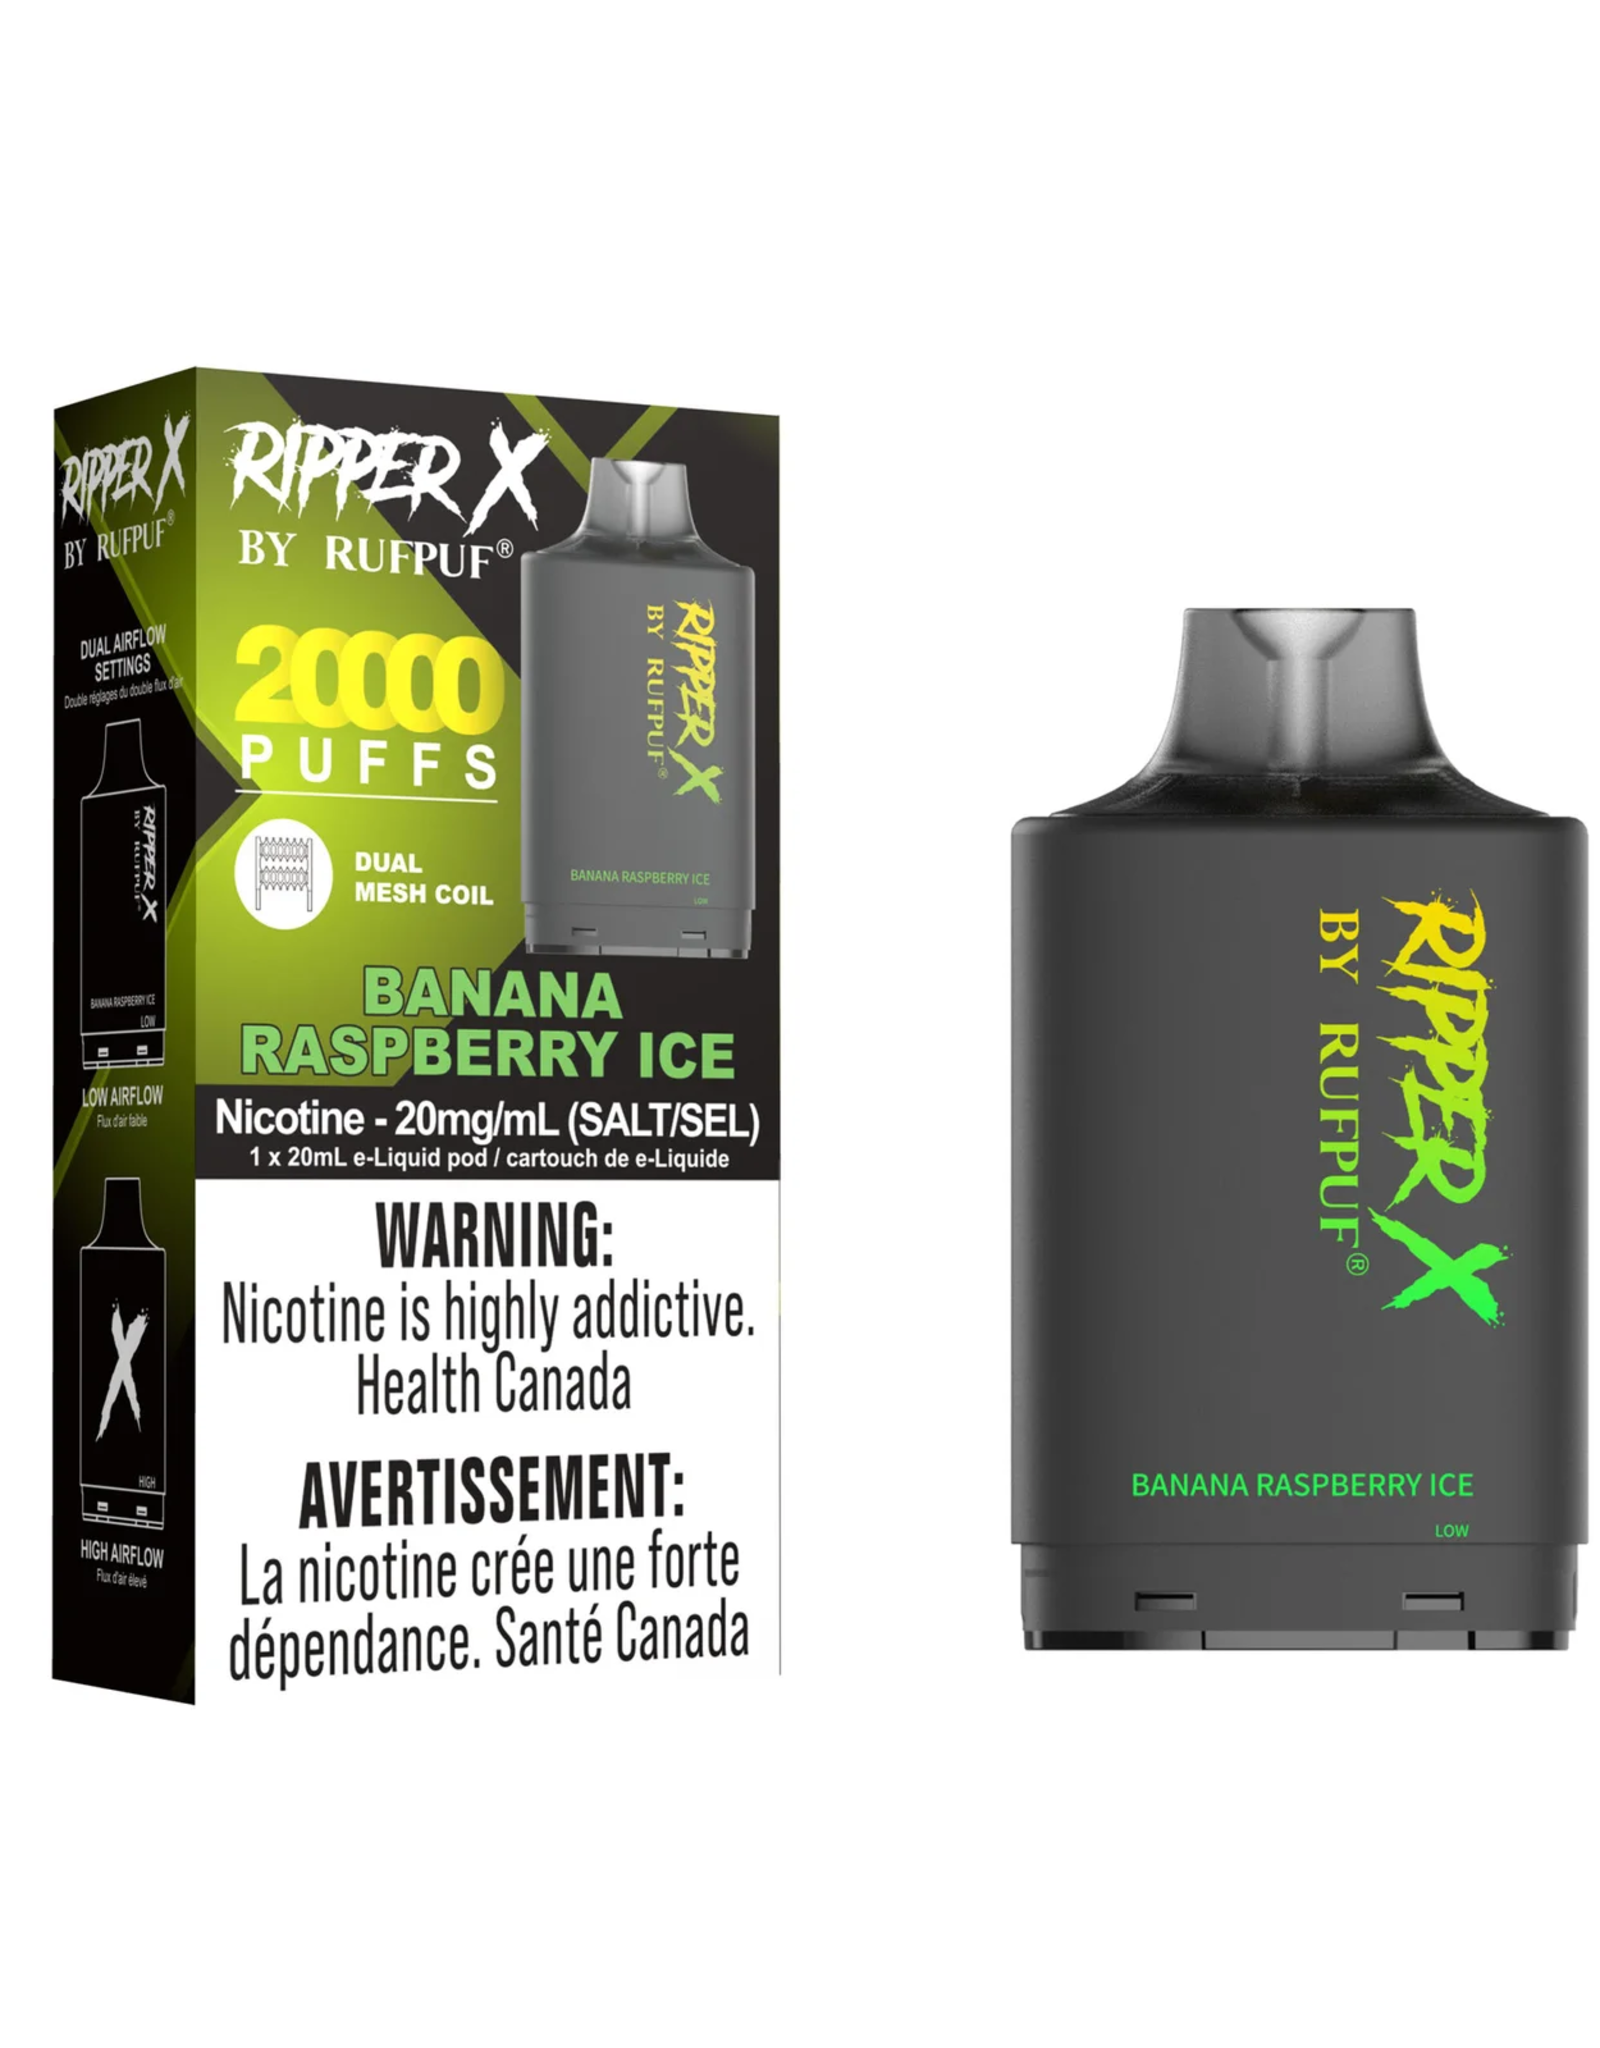 Rufpuf Ripper X